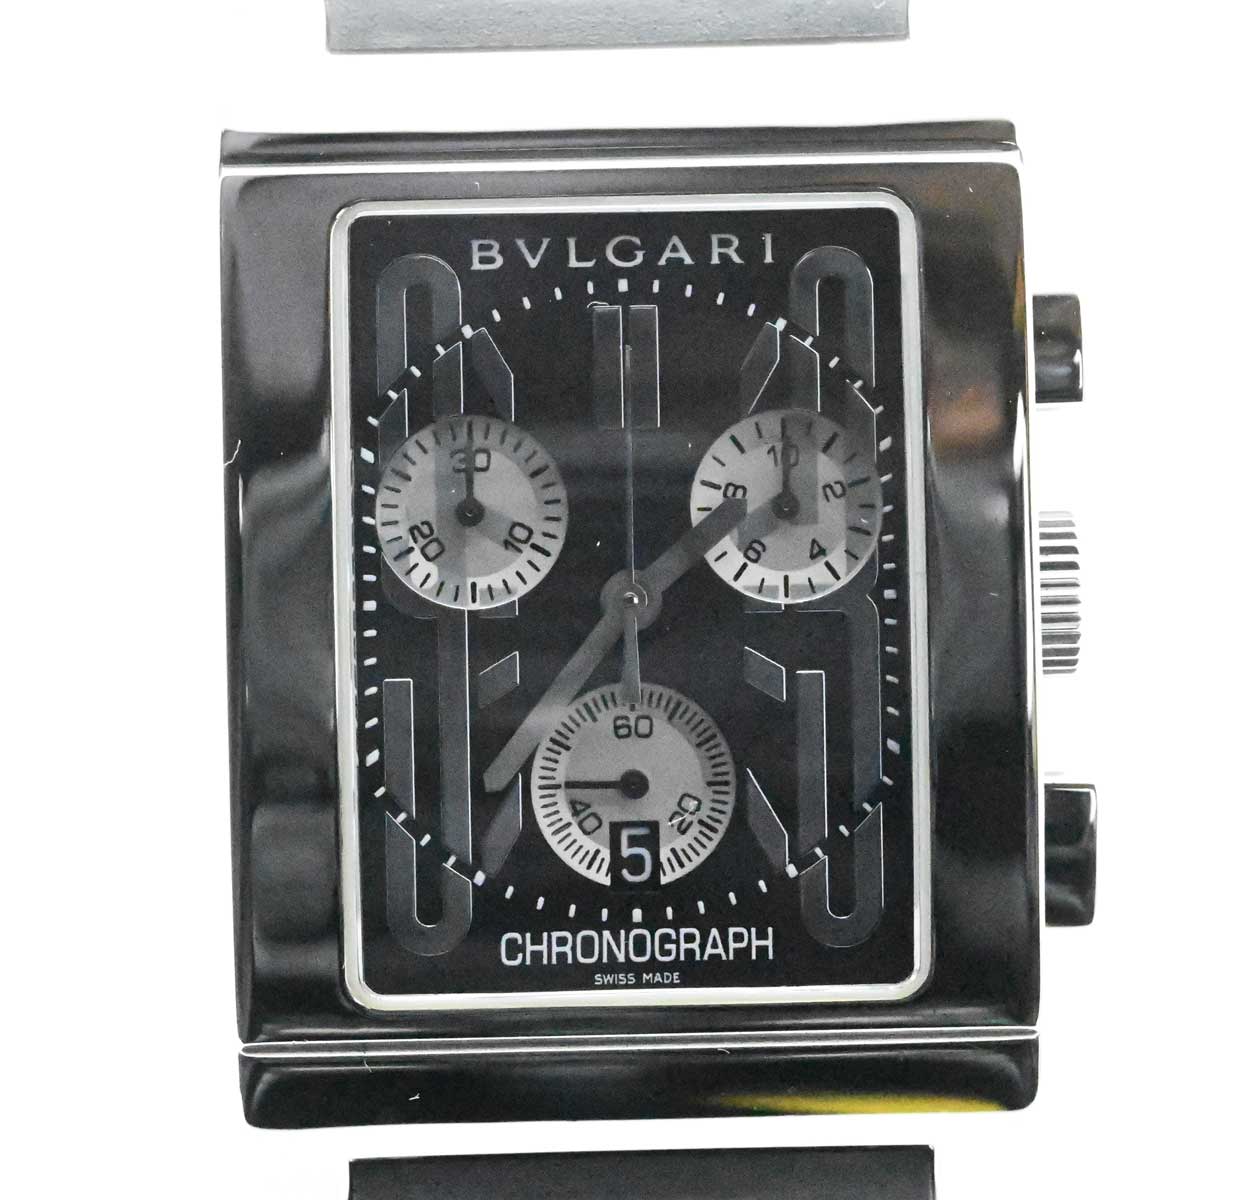 ブルガリ レッタンゴロ RTC49Sの価格一覧 - 腕時計投資.com